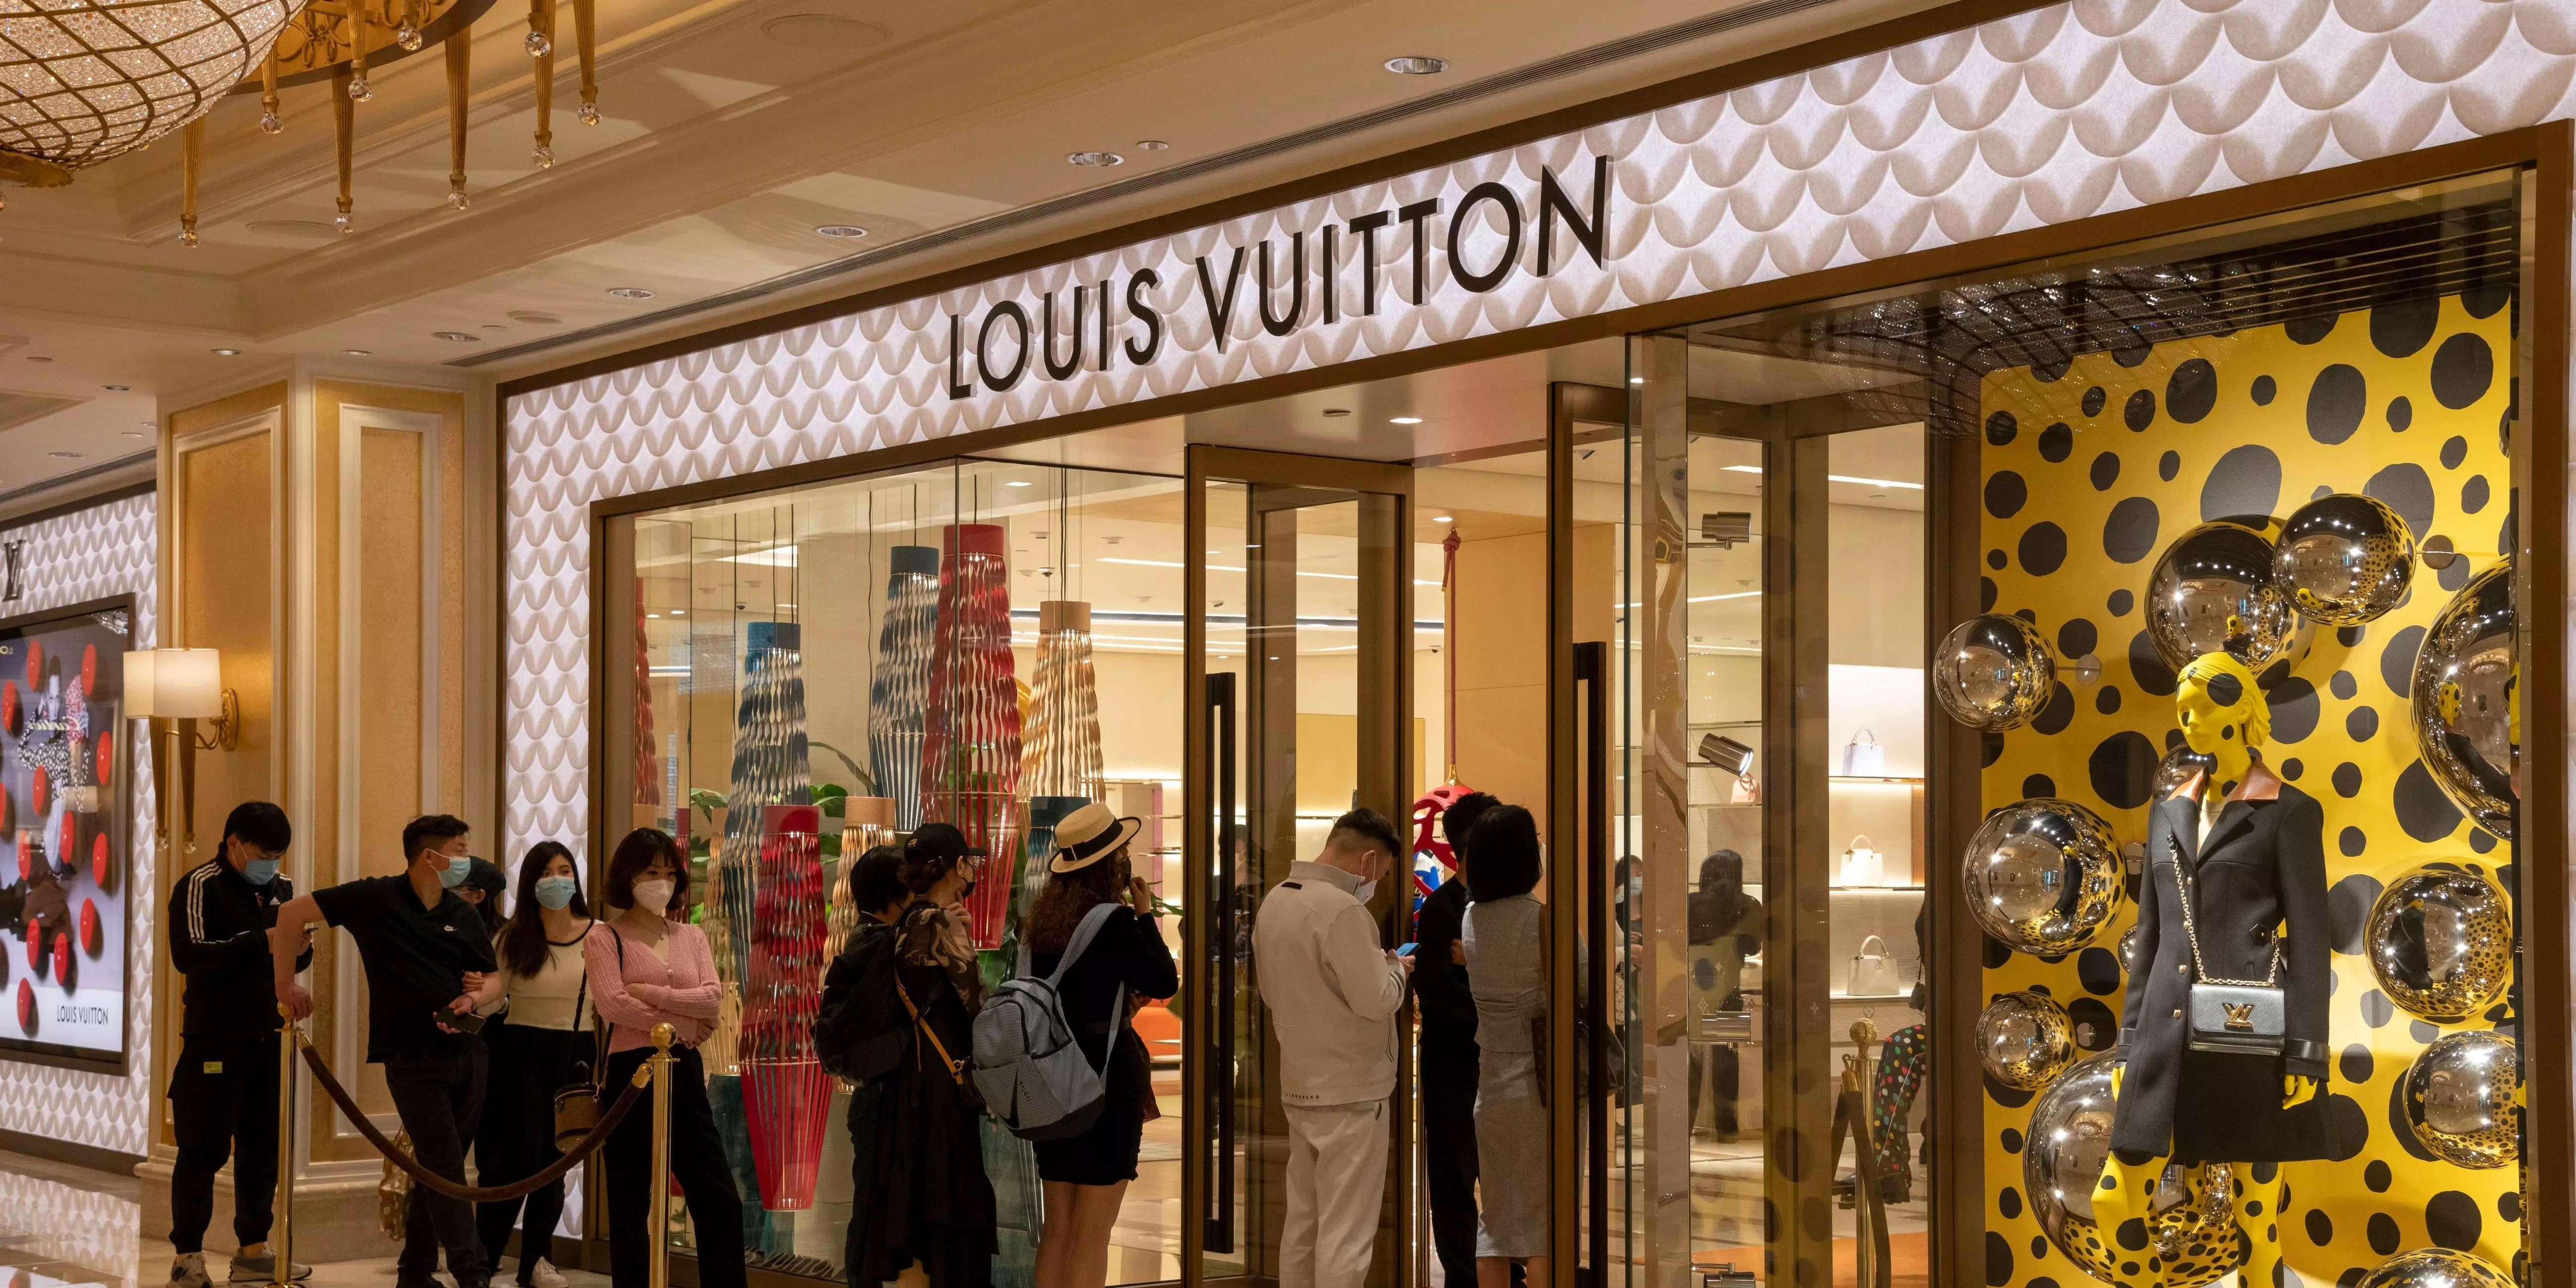 LVMH Leads $245 Billion Selloff Amid Luxury Stock Worries - Bloomberg